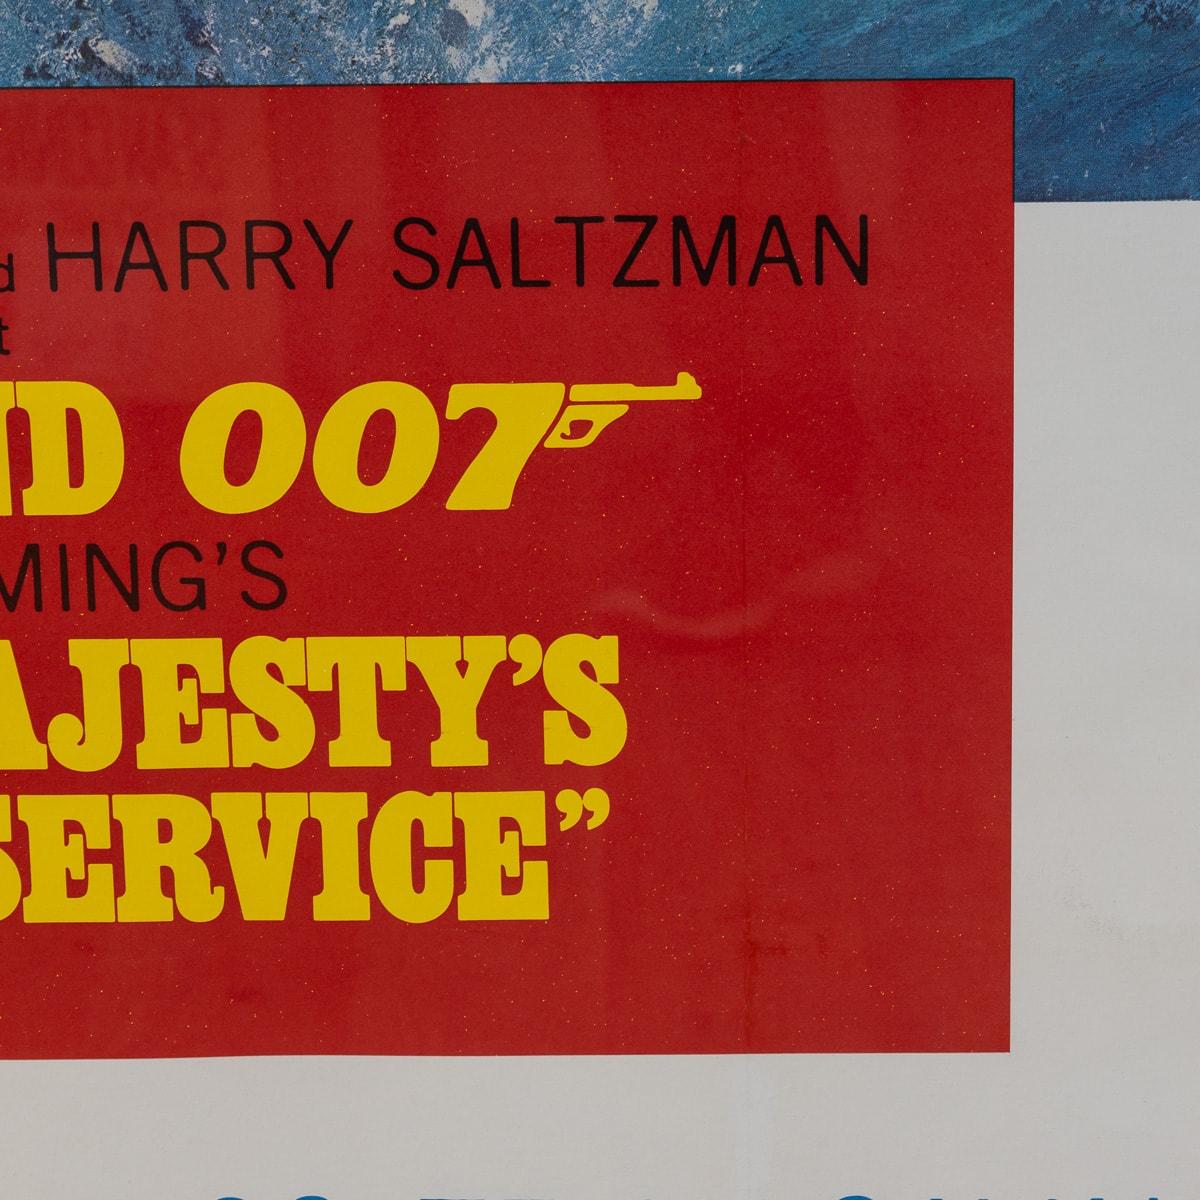 U.S Release James Bond 007 'On Her Majesty's Secret Service' Poster c.1969 For Sale 11